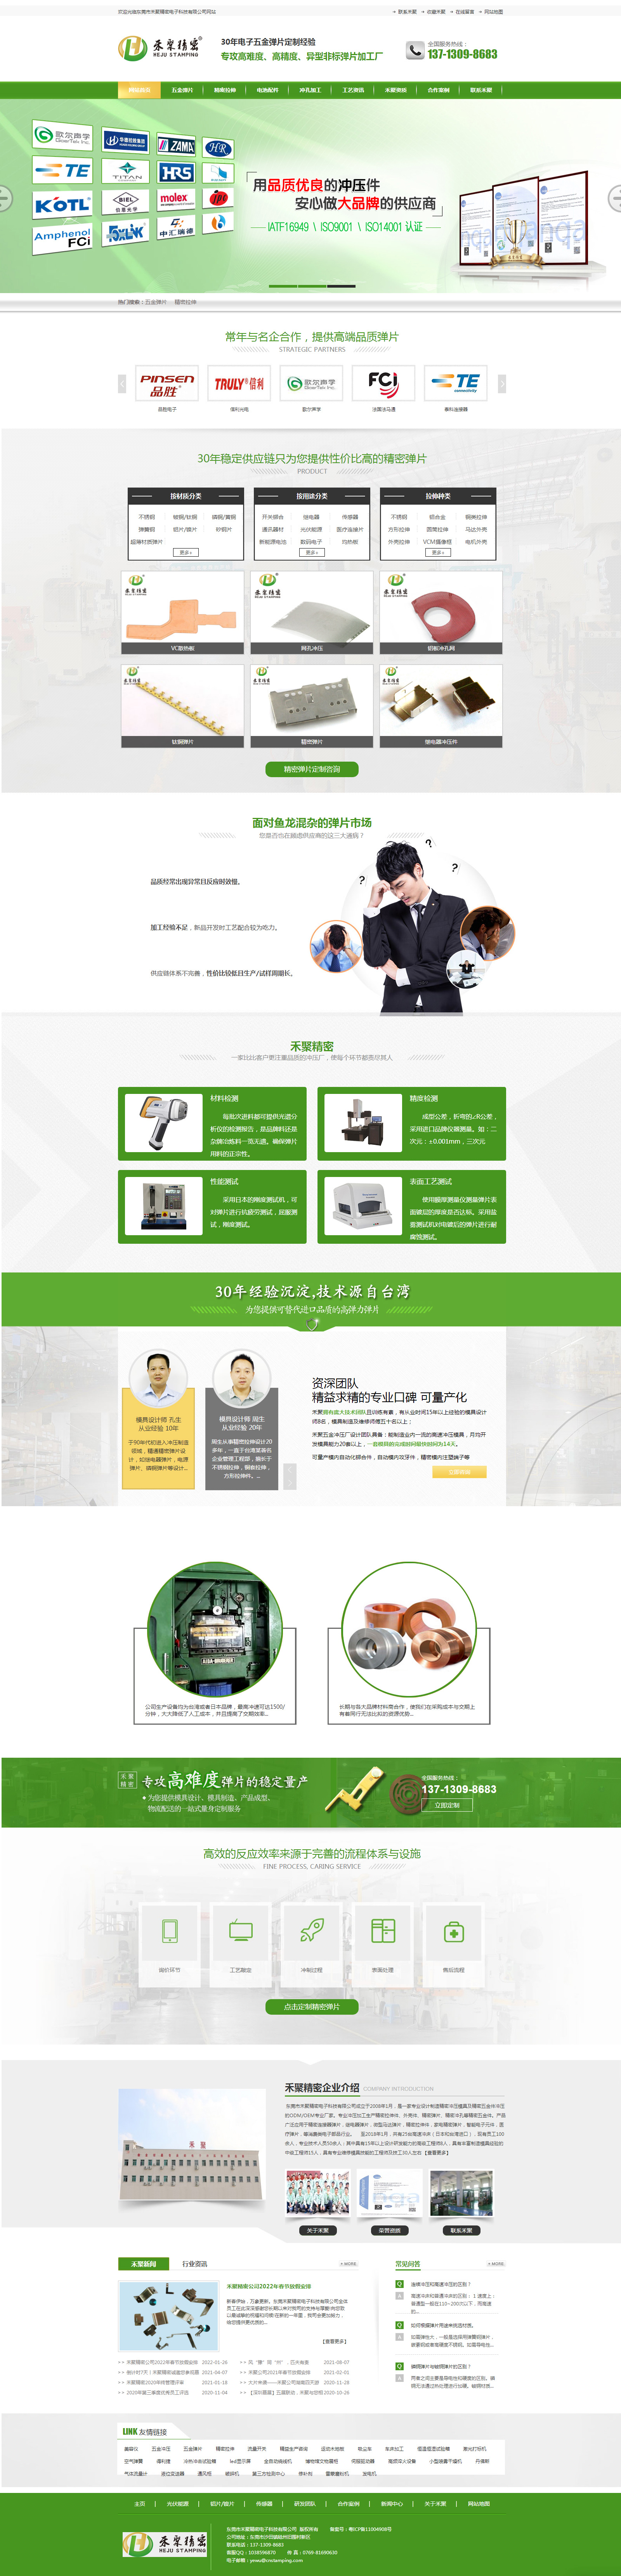 东莞禾聚精密电子科技网站设计效果图